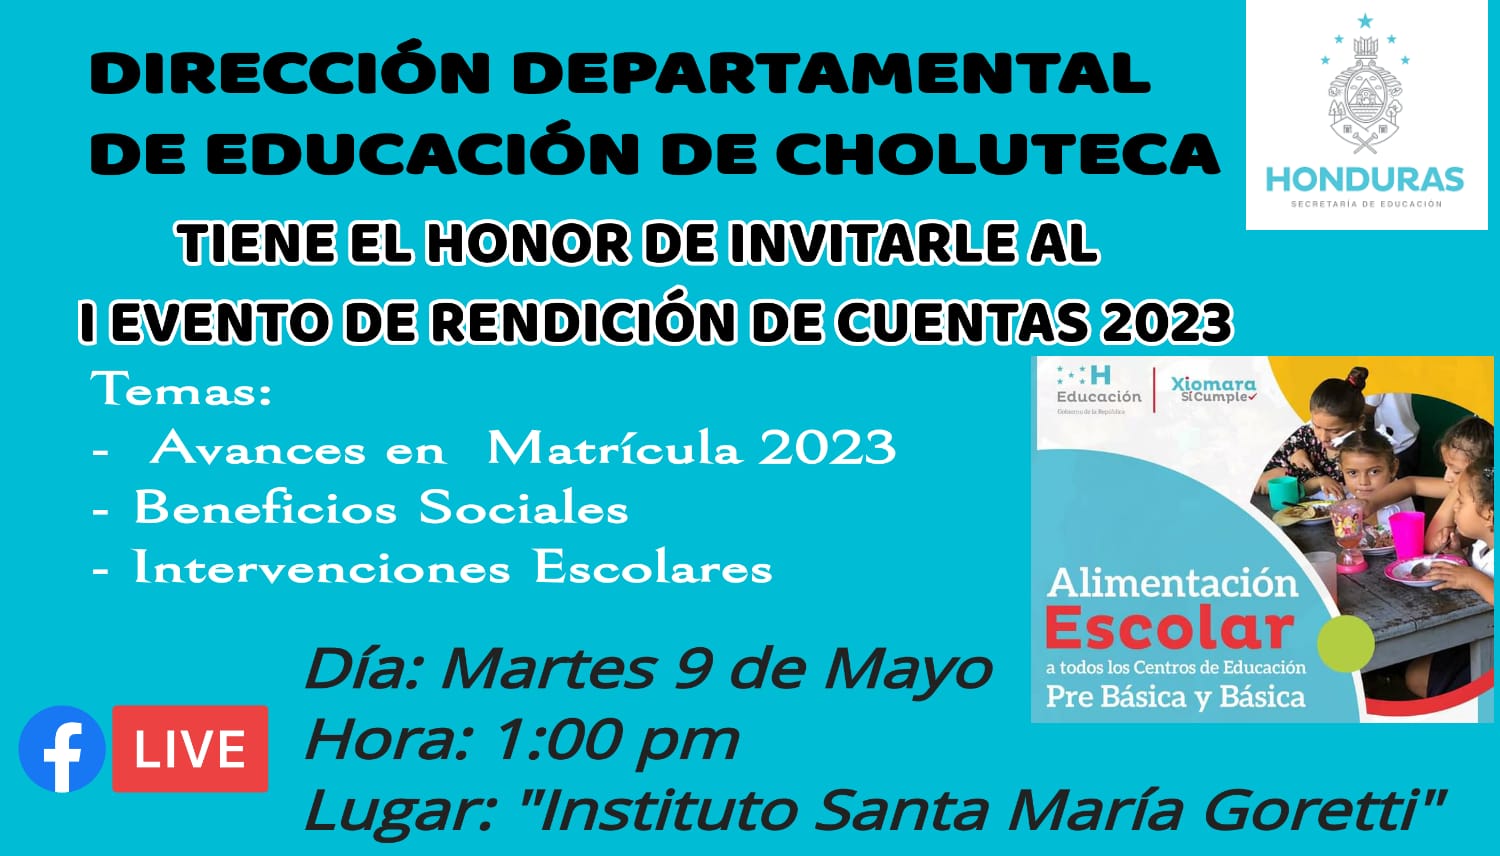 /media/departamentales/imagenes/INVITACION_DEL_I_EVENTO_DE_RENDICION_DE_CUENTAS_2023.jpg